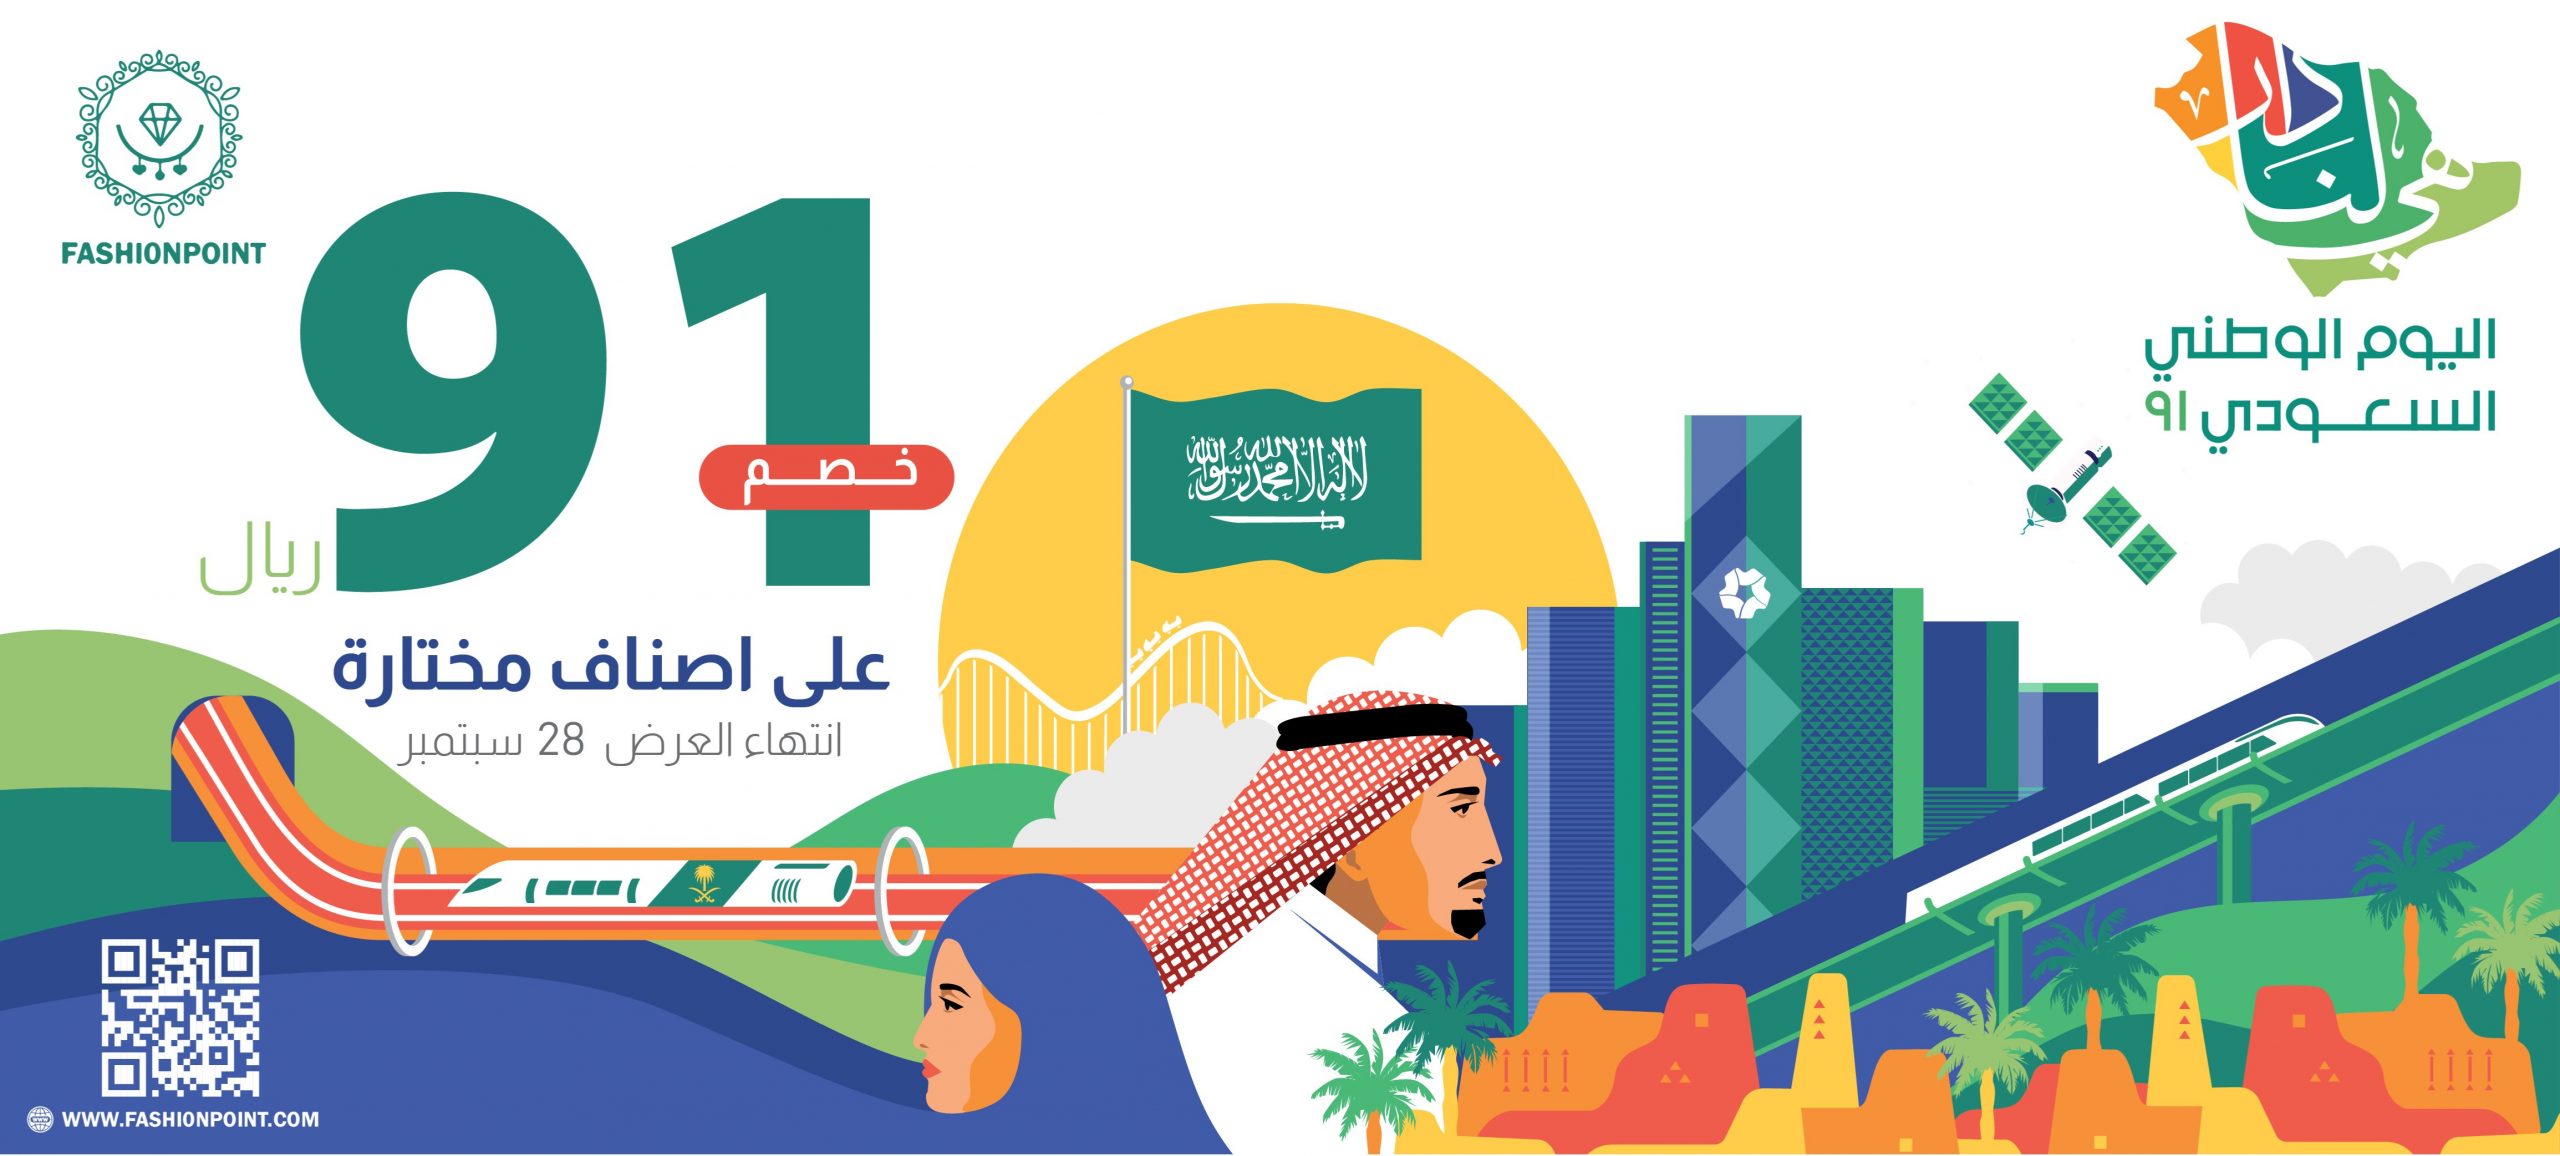 عروض اليوم الوطني السعودي 91 خصومات الشركات العالمية والعطور والمطاعم